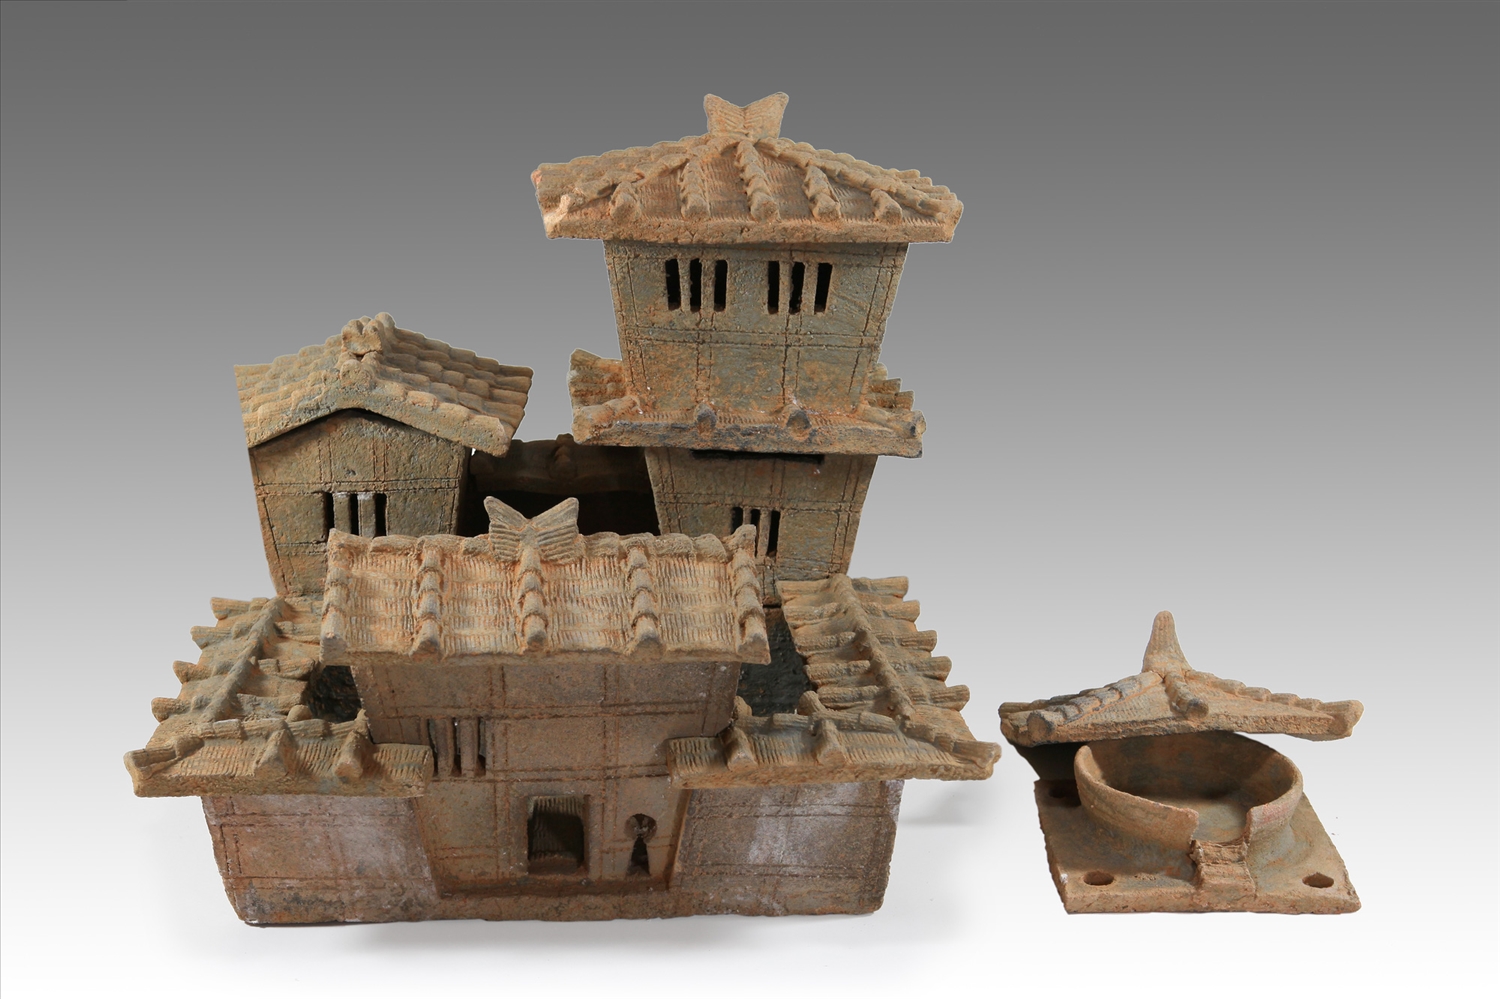 Mô hình nhà gốm, niên đại thế kỷ I-III